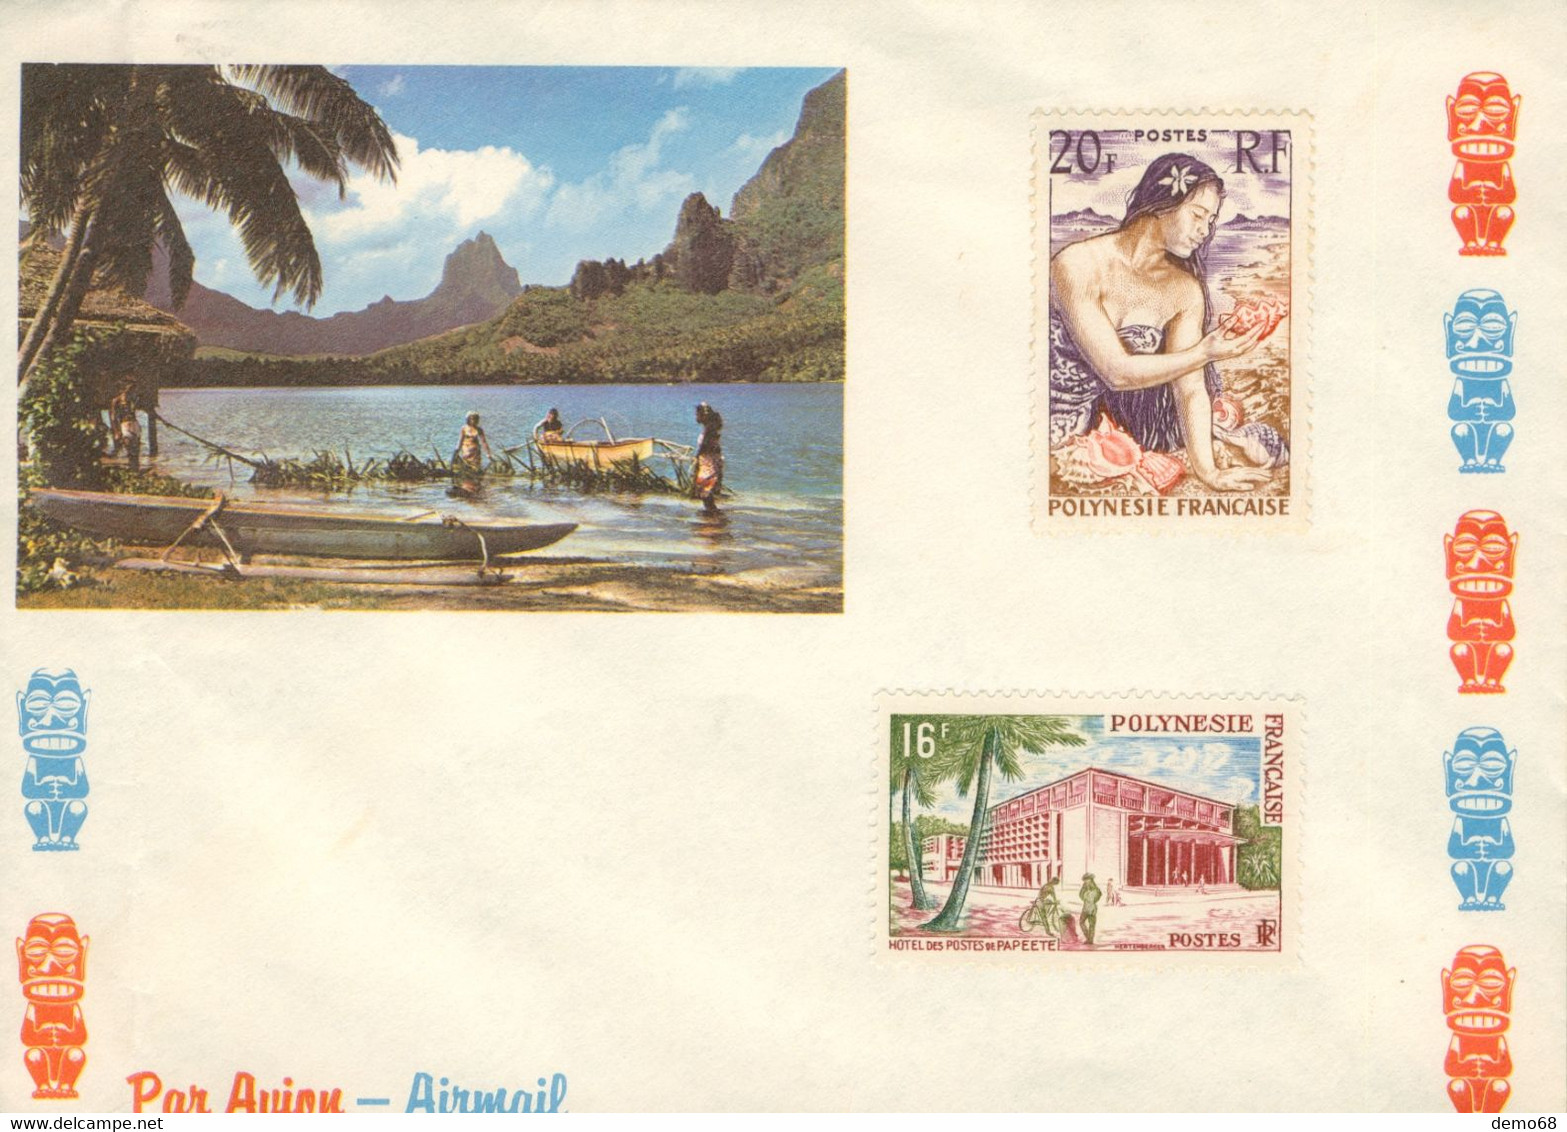 Stamp Timbre Polynésie Française 2 Timbres Neuf Non Oblitérés Poste Aérienne Sur Enveloppe Année ? Papeete - 1960-.... Nuovi